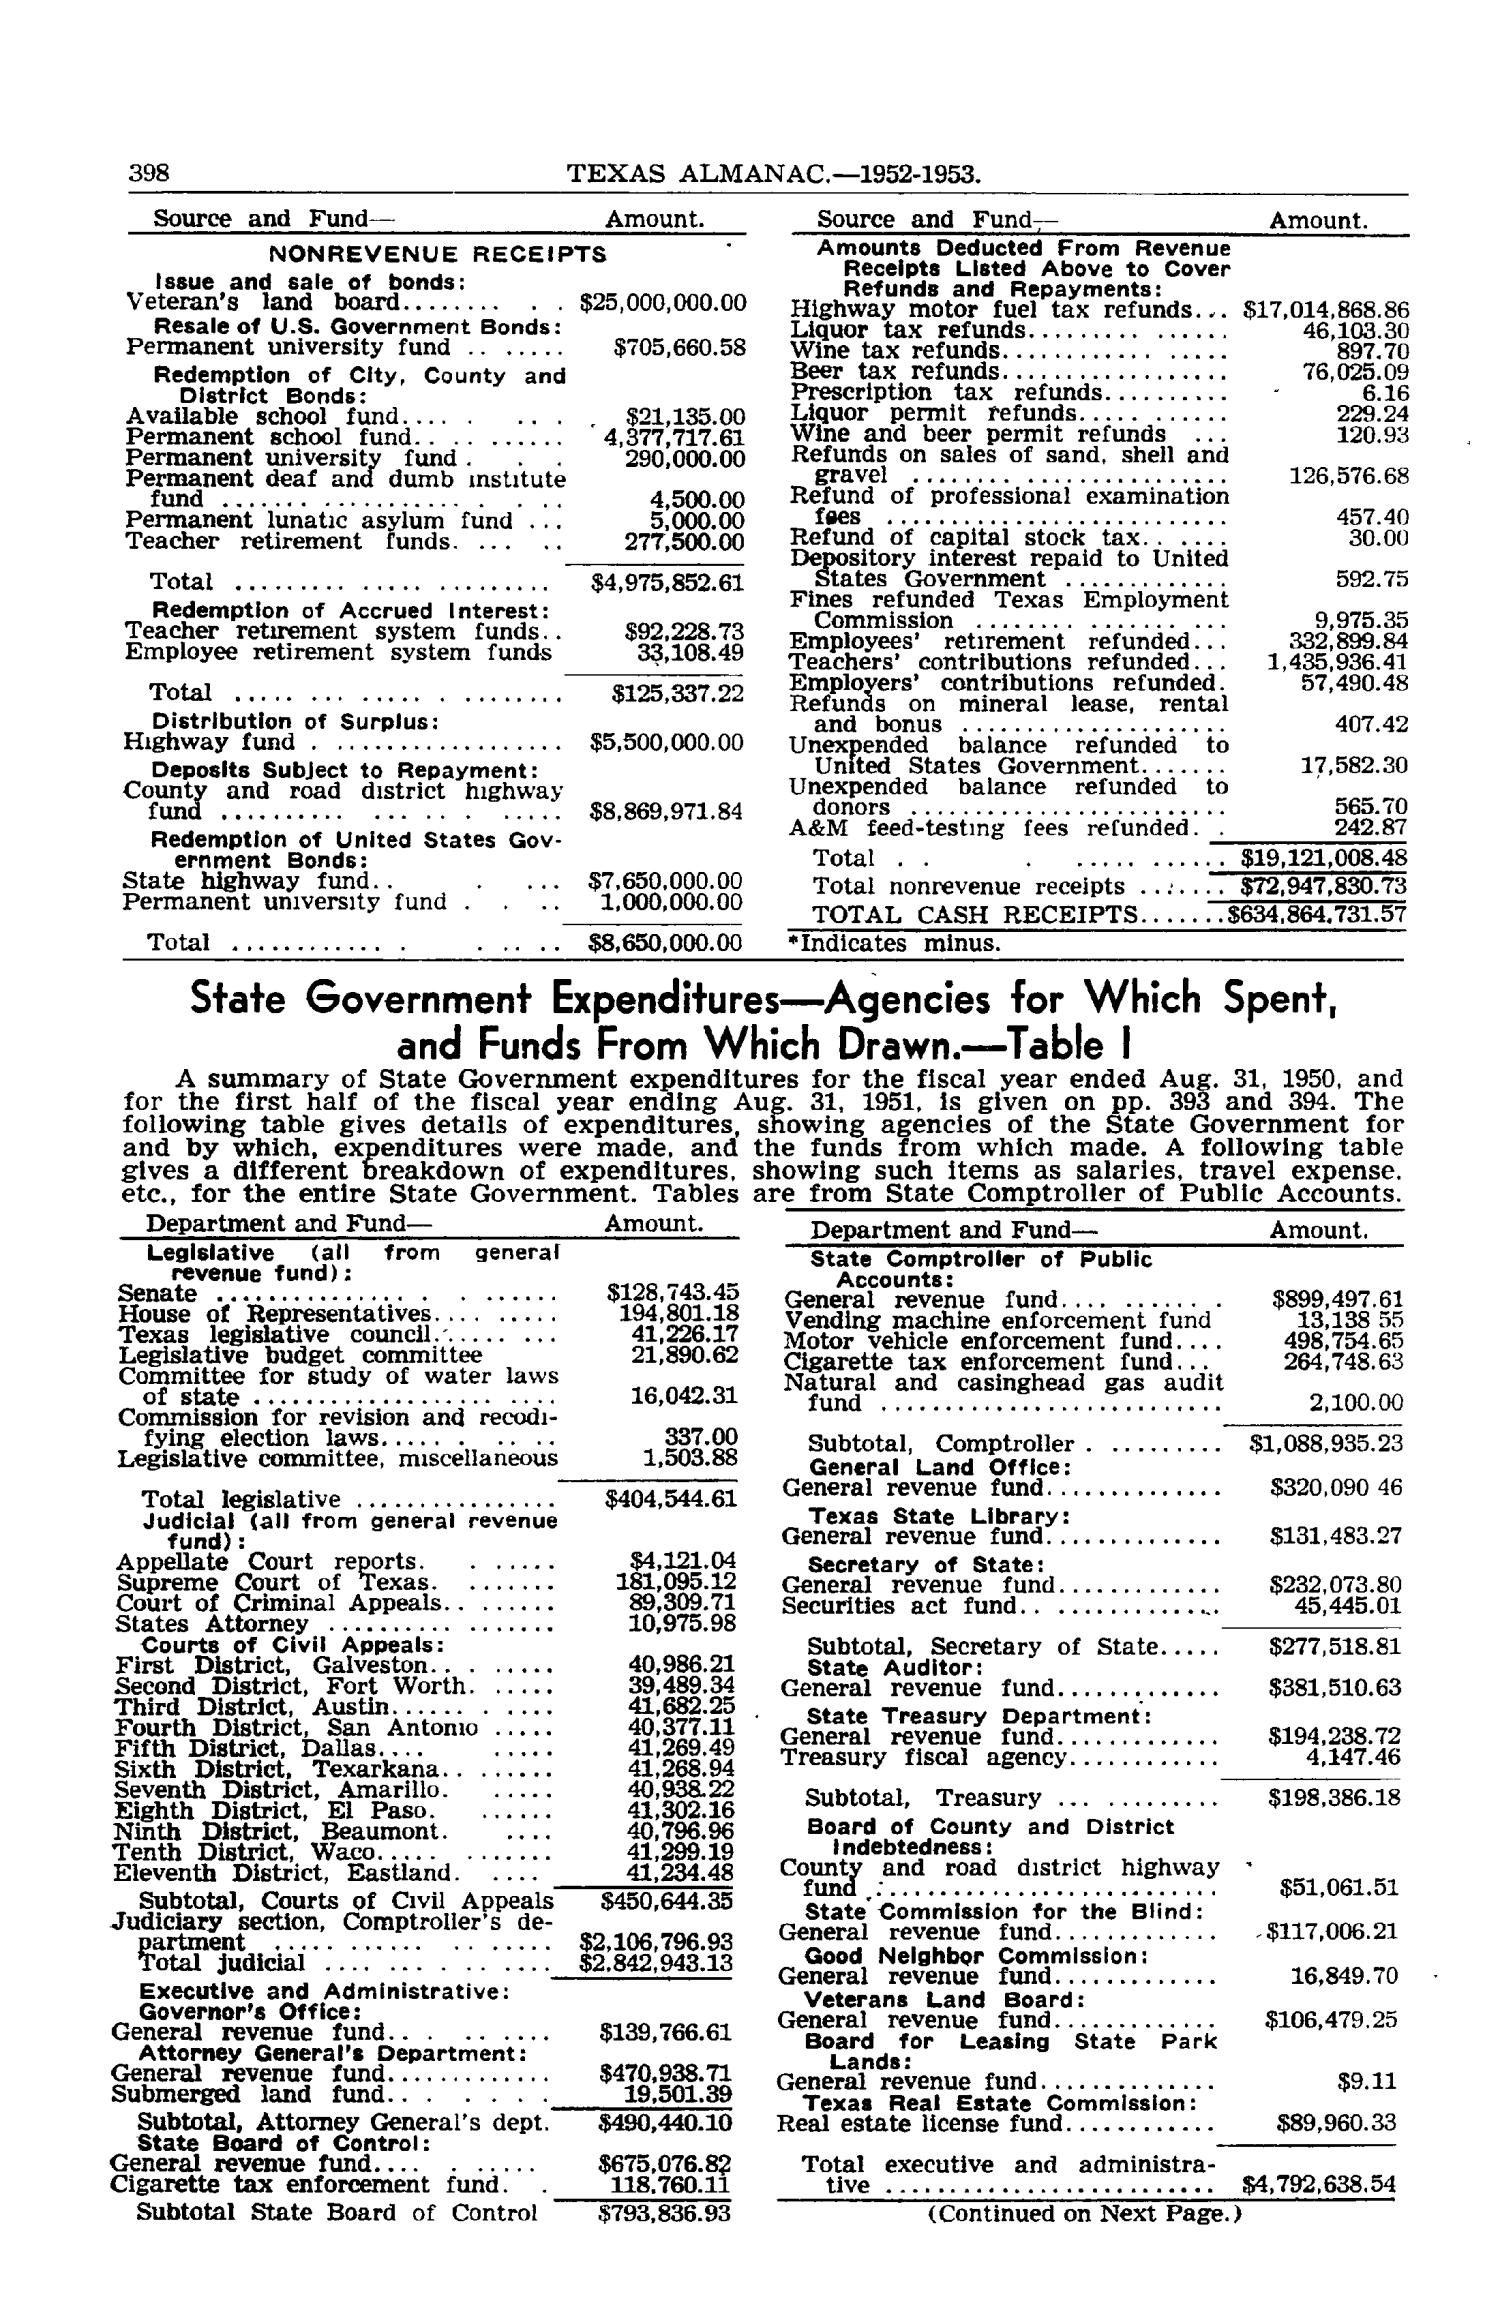 Texas Almanac, 1952-1953
                                                
                                                    398
                                                